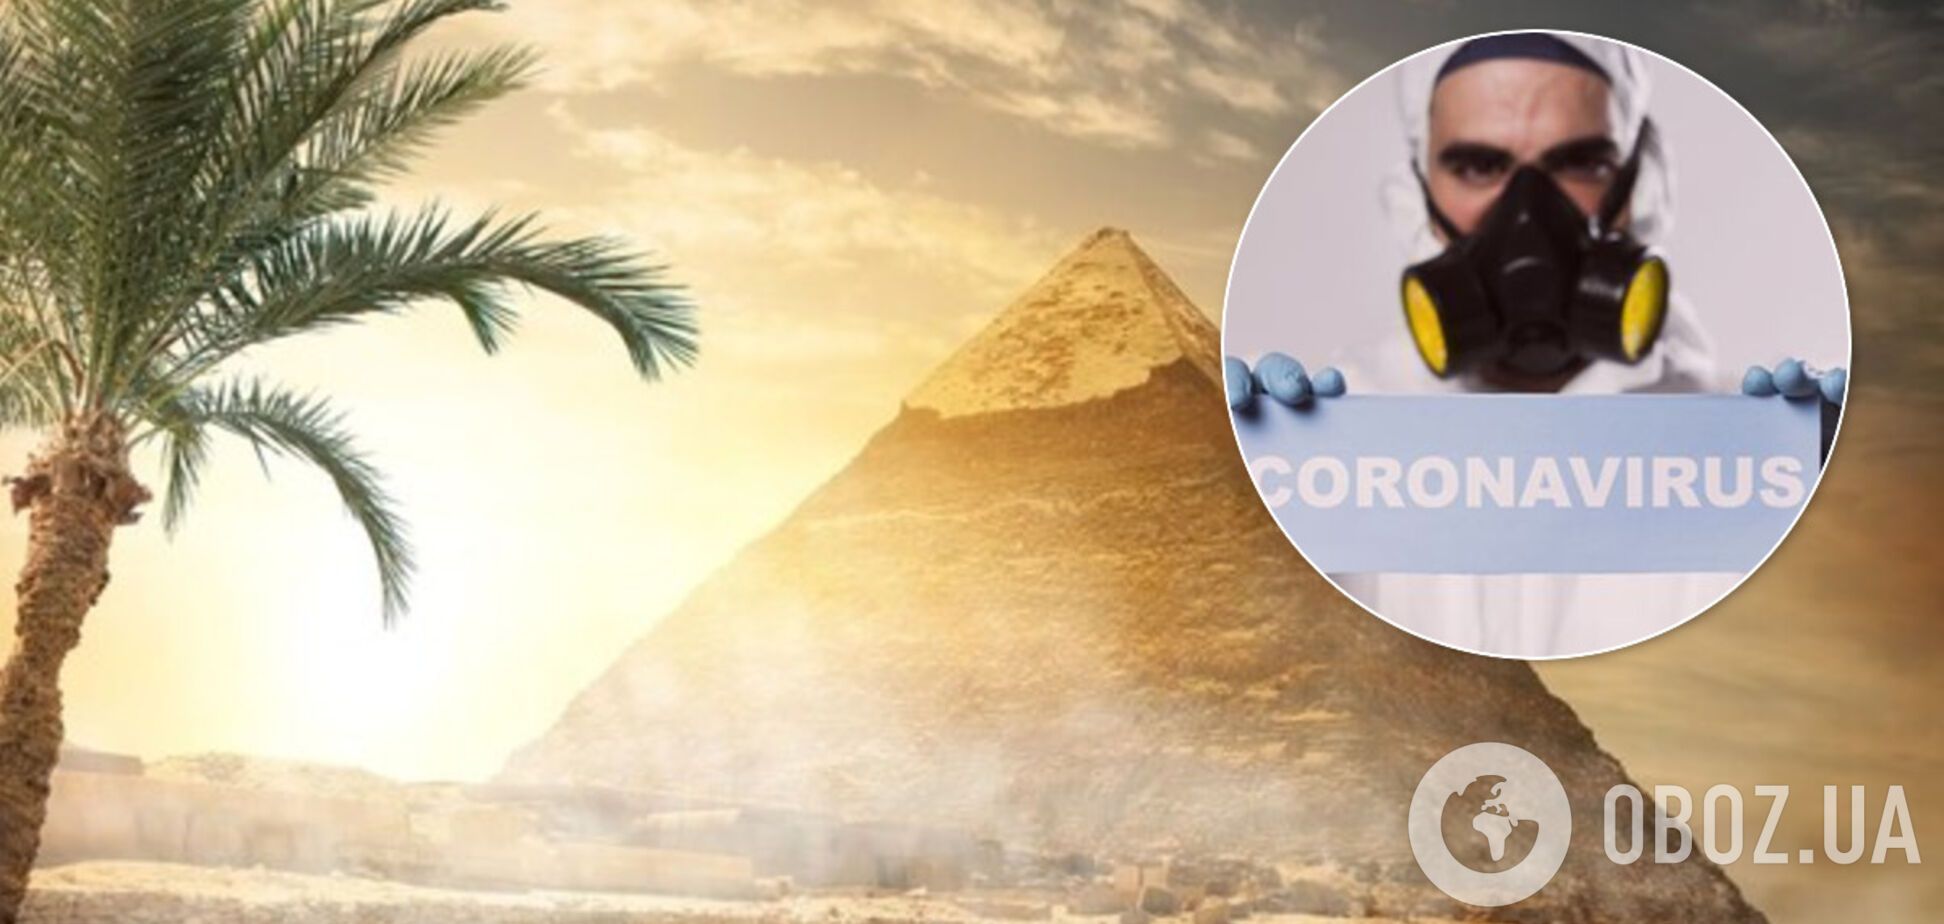 У Єгипті ввели нові правила для туристів через коронавірус: що змінилося